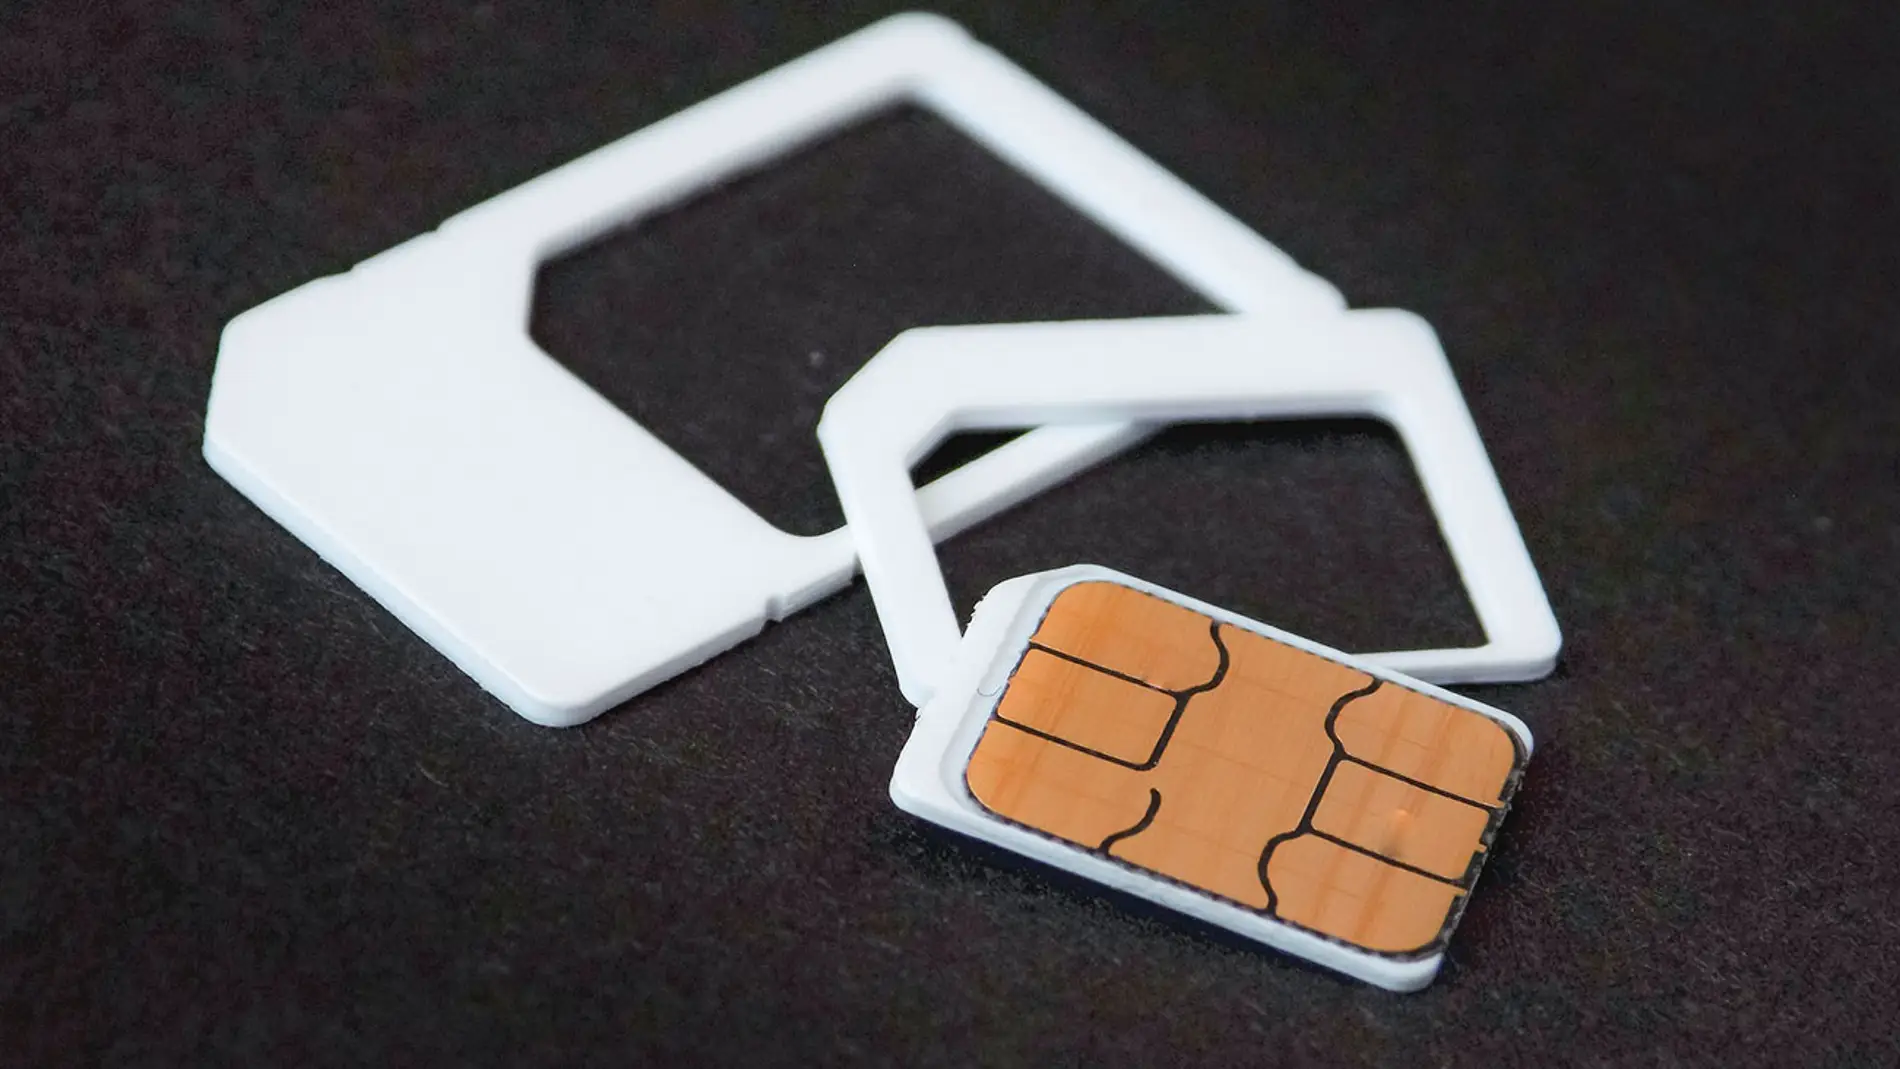 Compra tarjetas eSIM o tarjetas SIM físicas por Internet hoy mismo